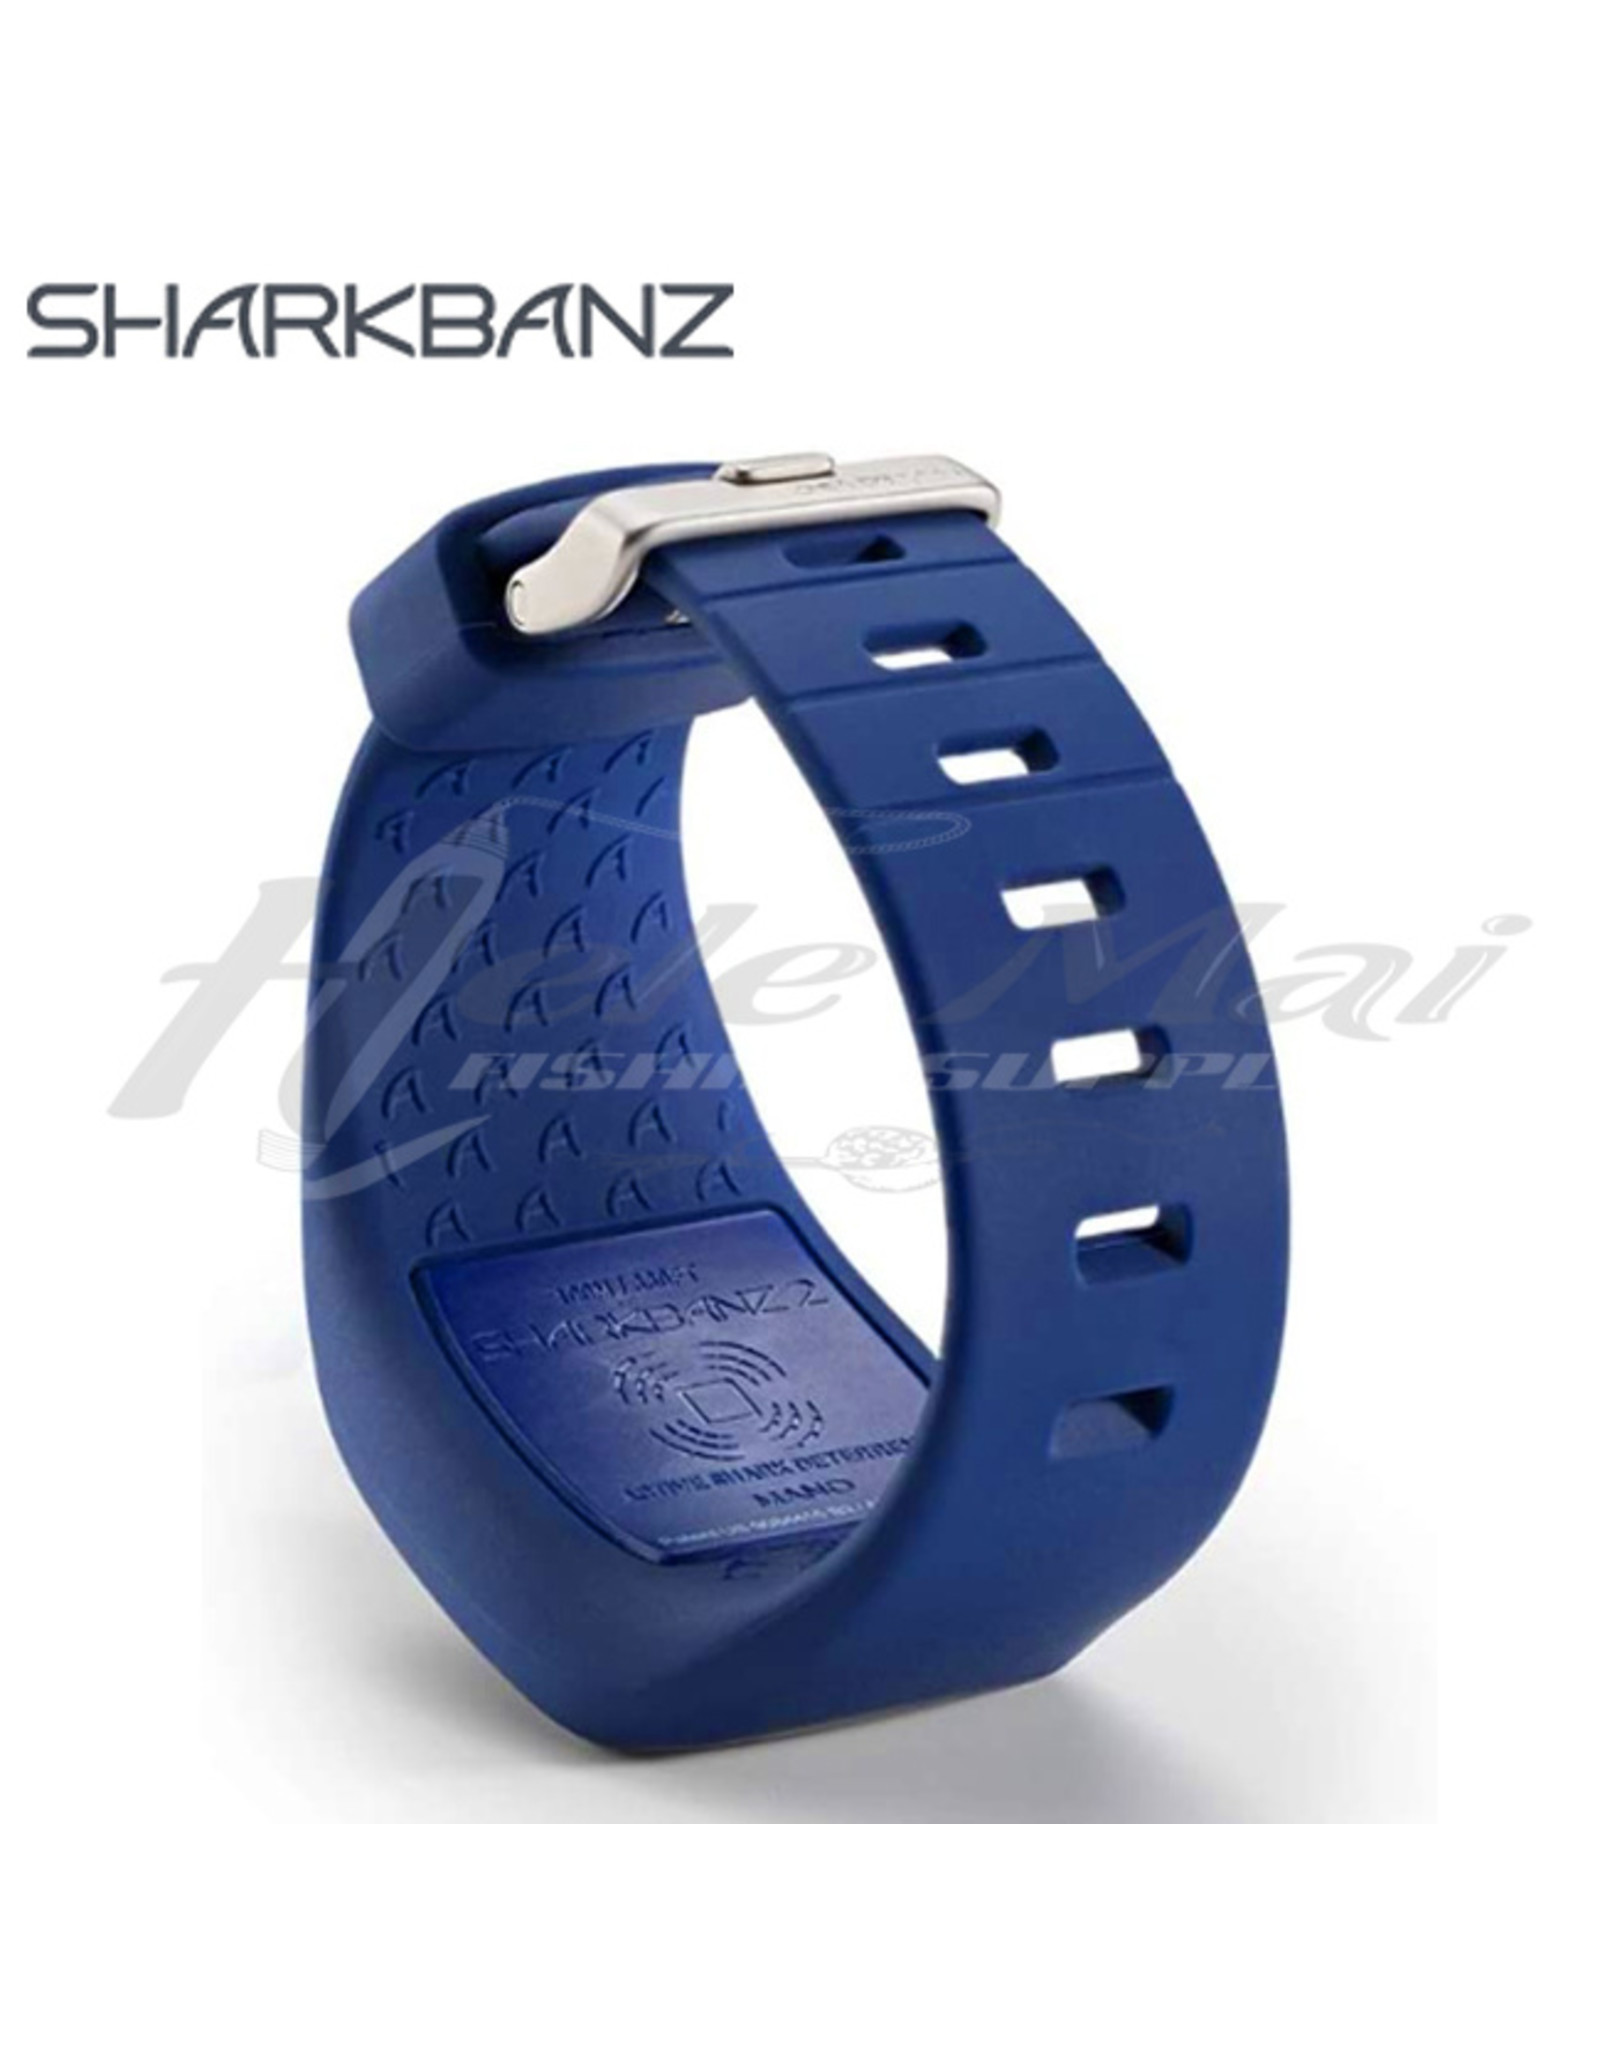 SHARKBANZ SHARKBANZ, Active Shark Deterrent Band, Marine/Slate